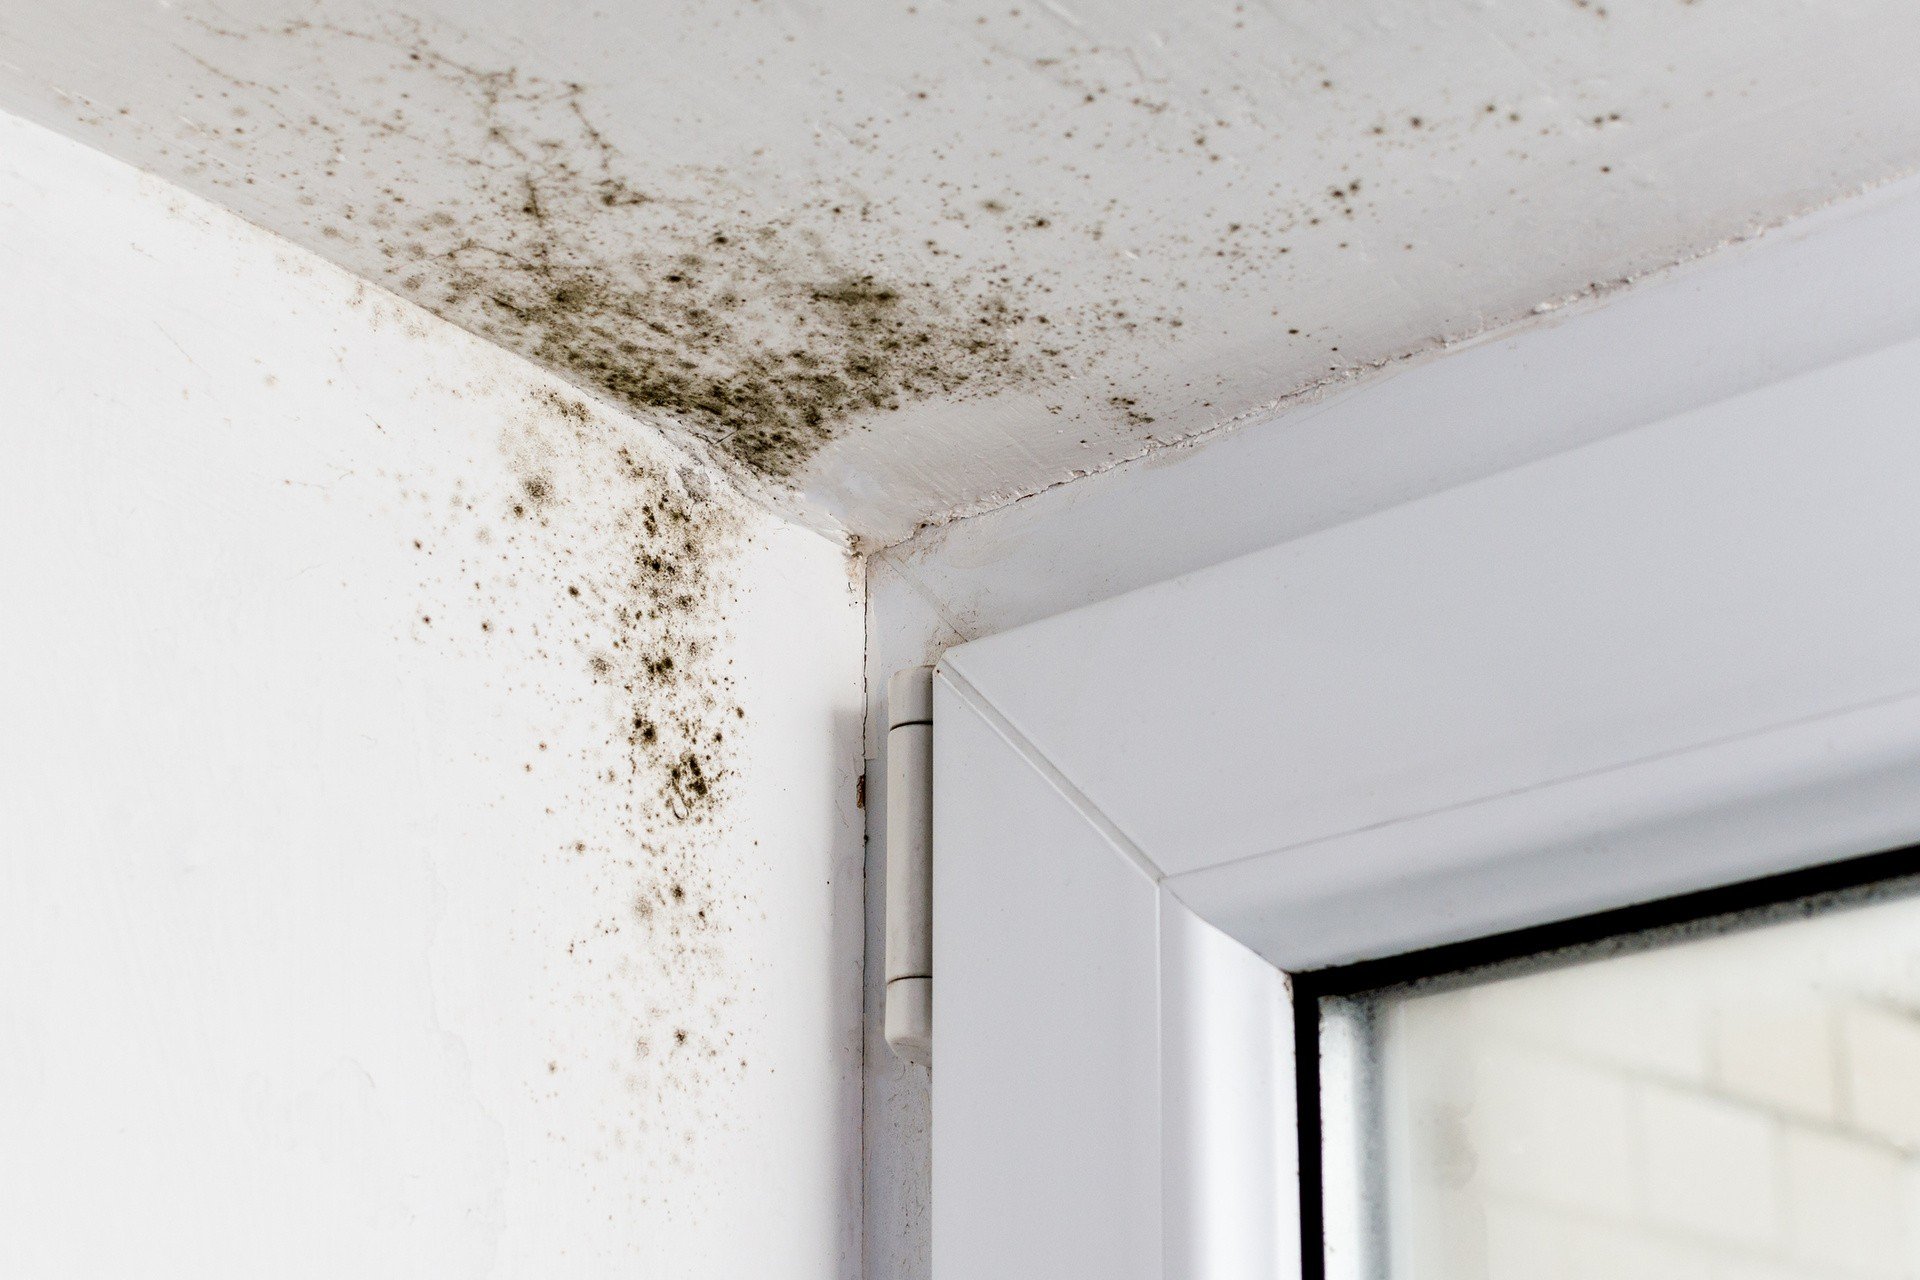 Jak się pozbyć grzyba ze ścian? Poznaj sprawdzone sposoby. Przyczyną  powstawania pleśni i grzybów najczęściej jest wilgoć | RegioDom